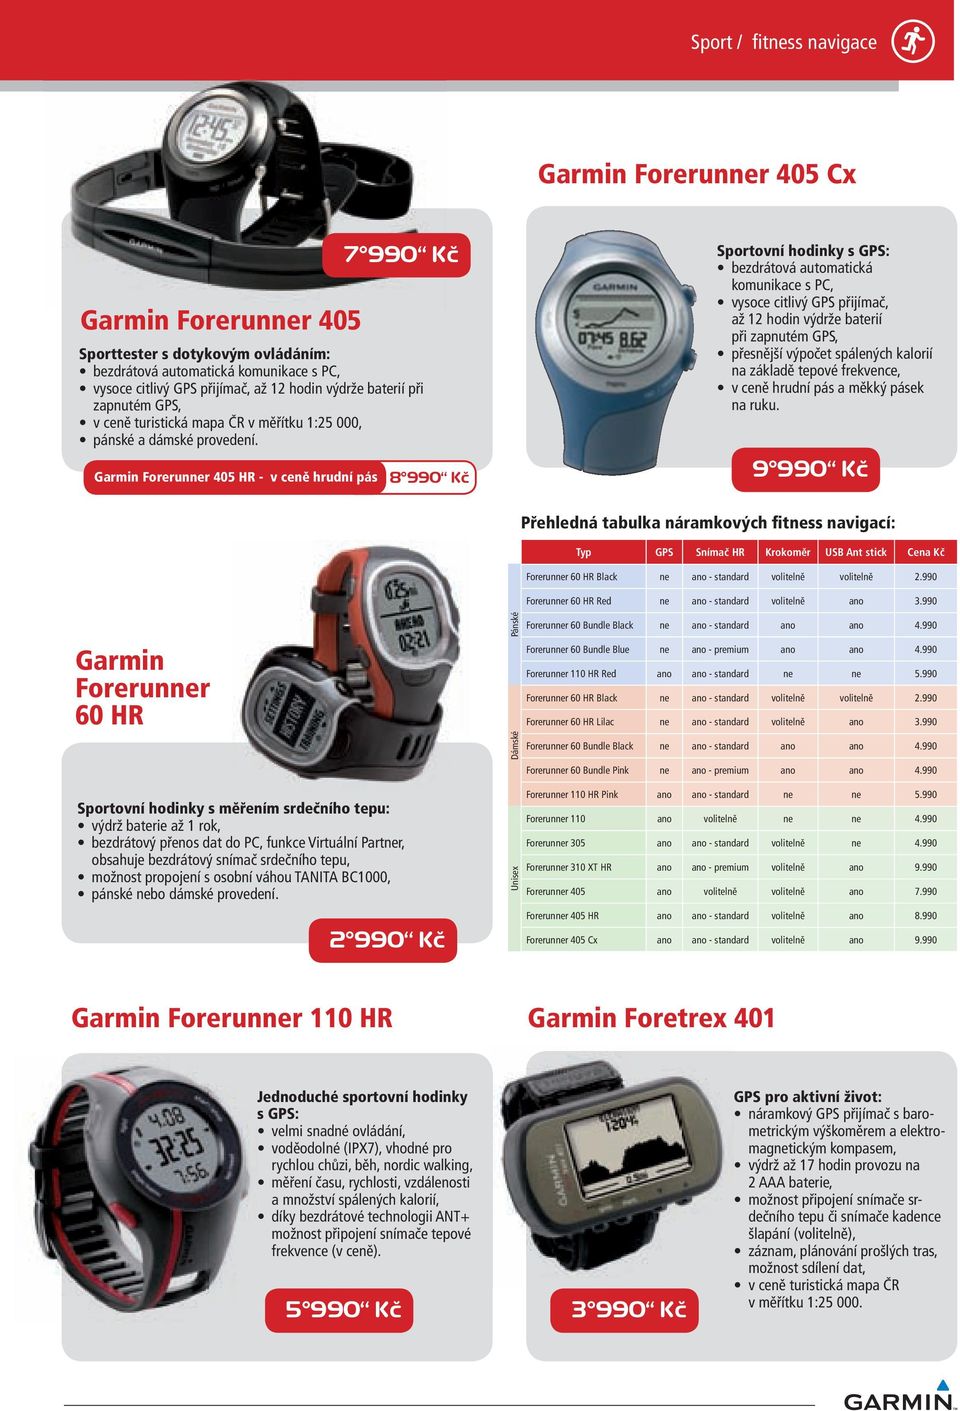 Forerunner 405 HR - v ceně hrudní pás 7 990 Kč 8 990 Kč Sportovní hodinky s GPS: bezdrátová automatická komunikace s PC, vysoce citlivý GPS přijímač, až 12 hodin výdrže baterií při zapnutém GPS,